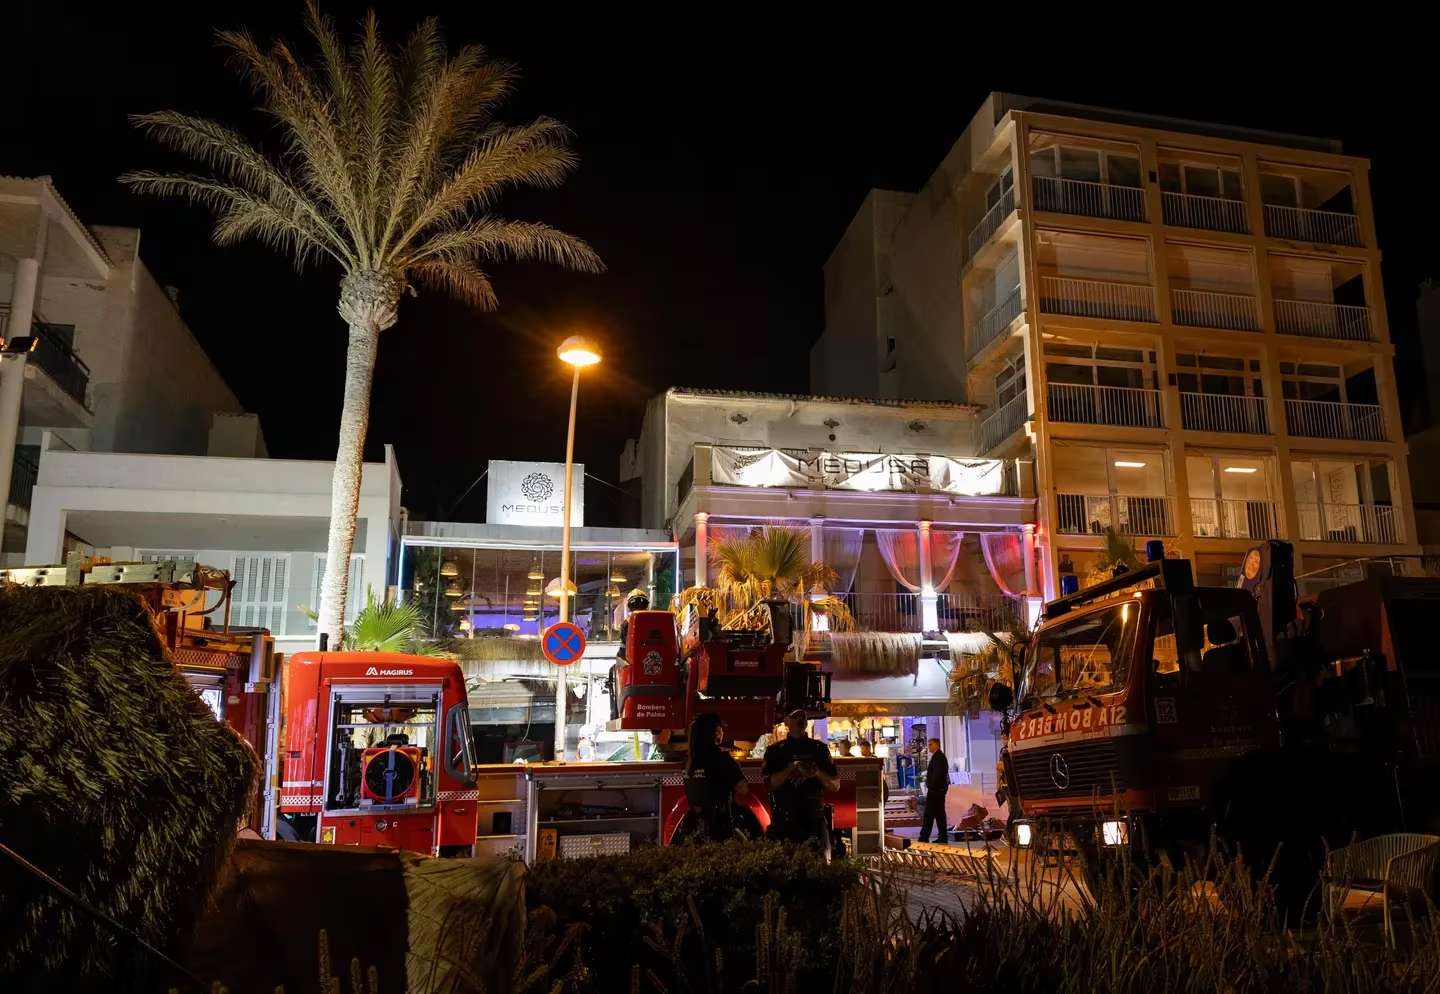 Se derrumbó el techo de un restaurante en Mallorca: 4 muertos y más de 20 heridos